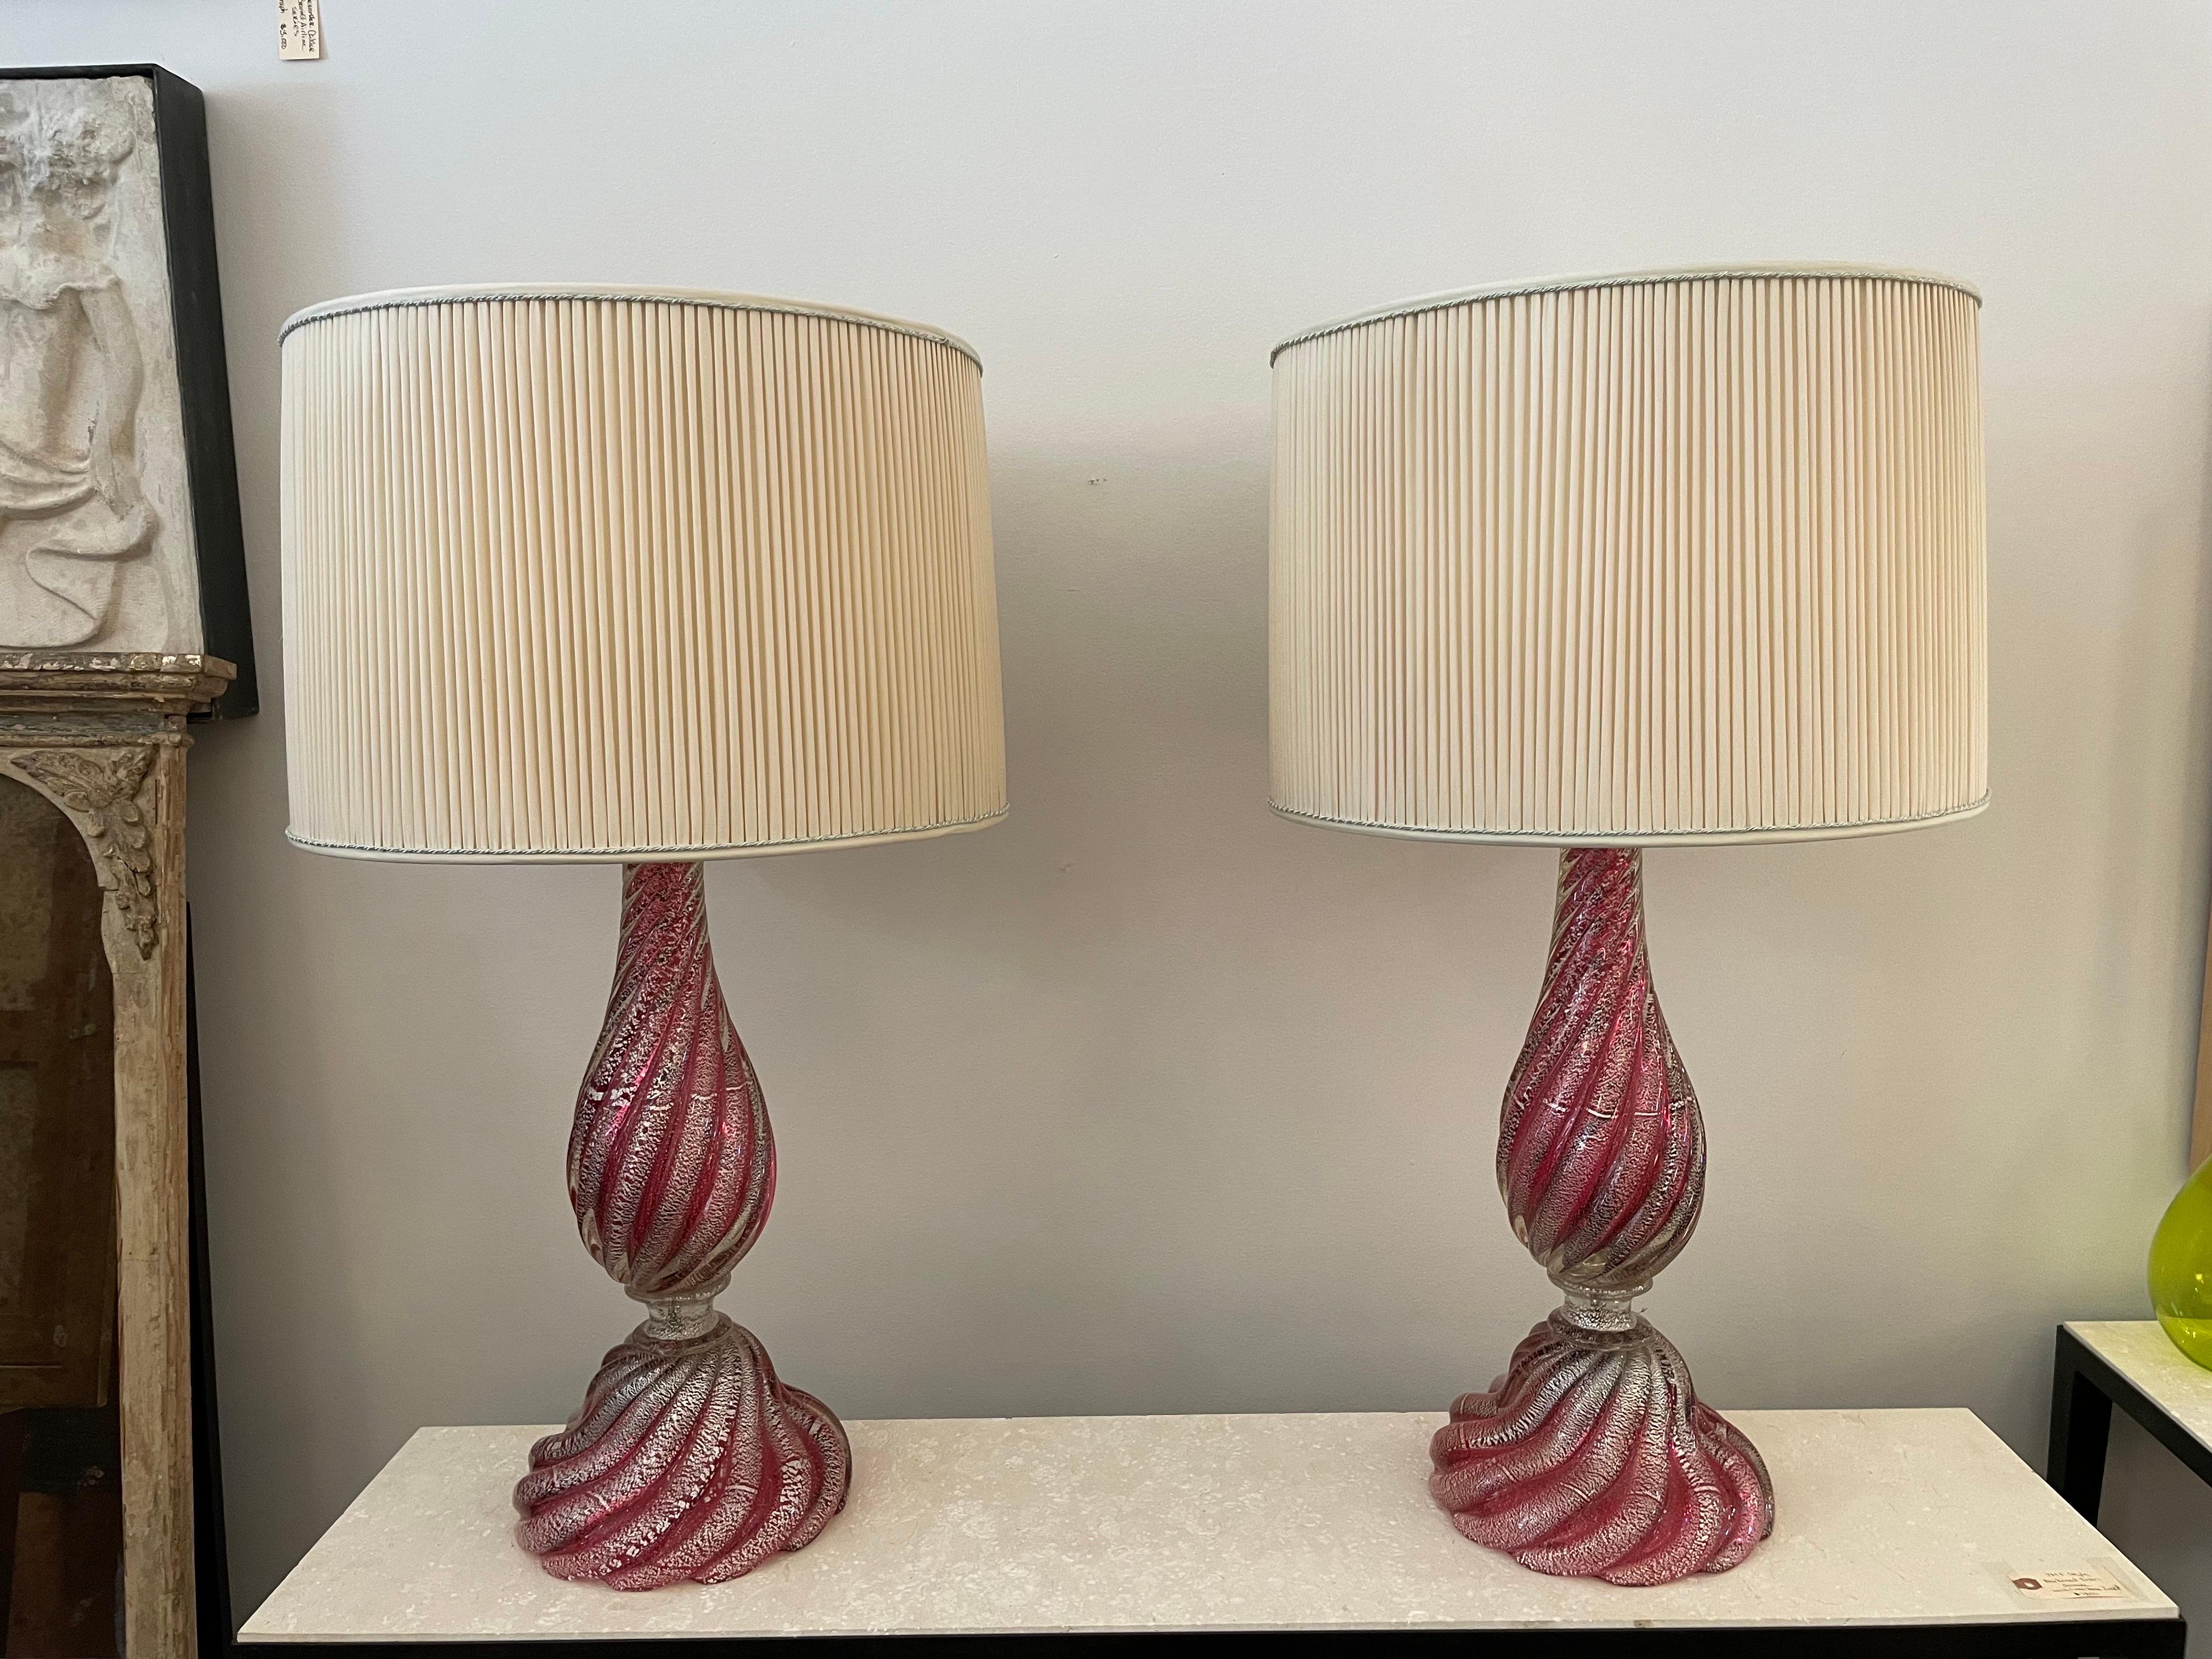 Il s'agit d'une élégante paire de lampes en verre de Murano de couleur framboise avec des inclusions de feuilles d'argent. Magnifique base et corps tourbillonnants - illuminés ou non, ils font une déclaration étonnante. Les abat-jour plissés